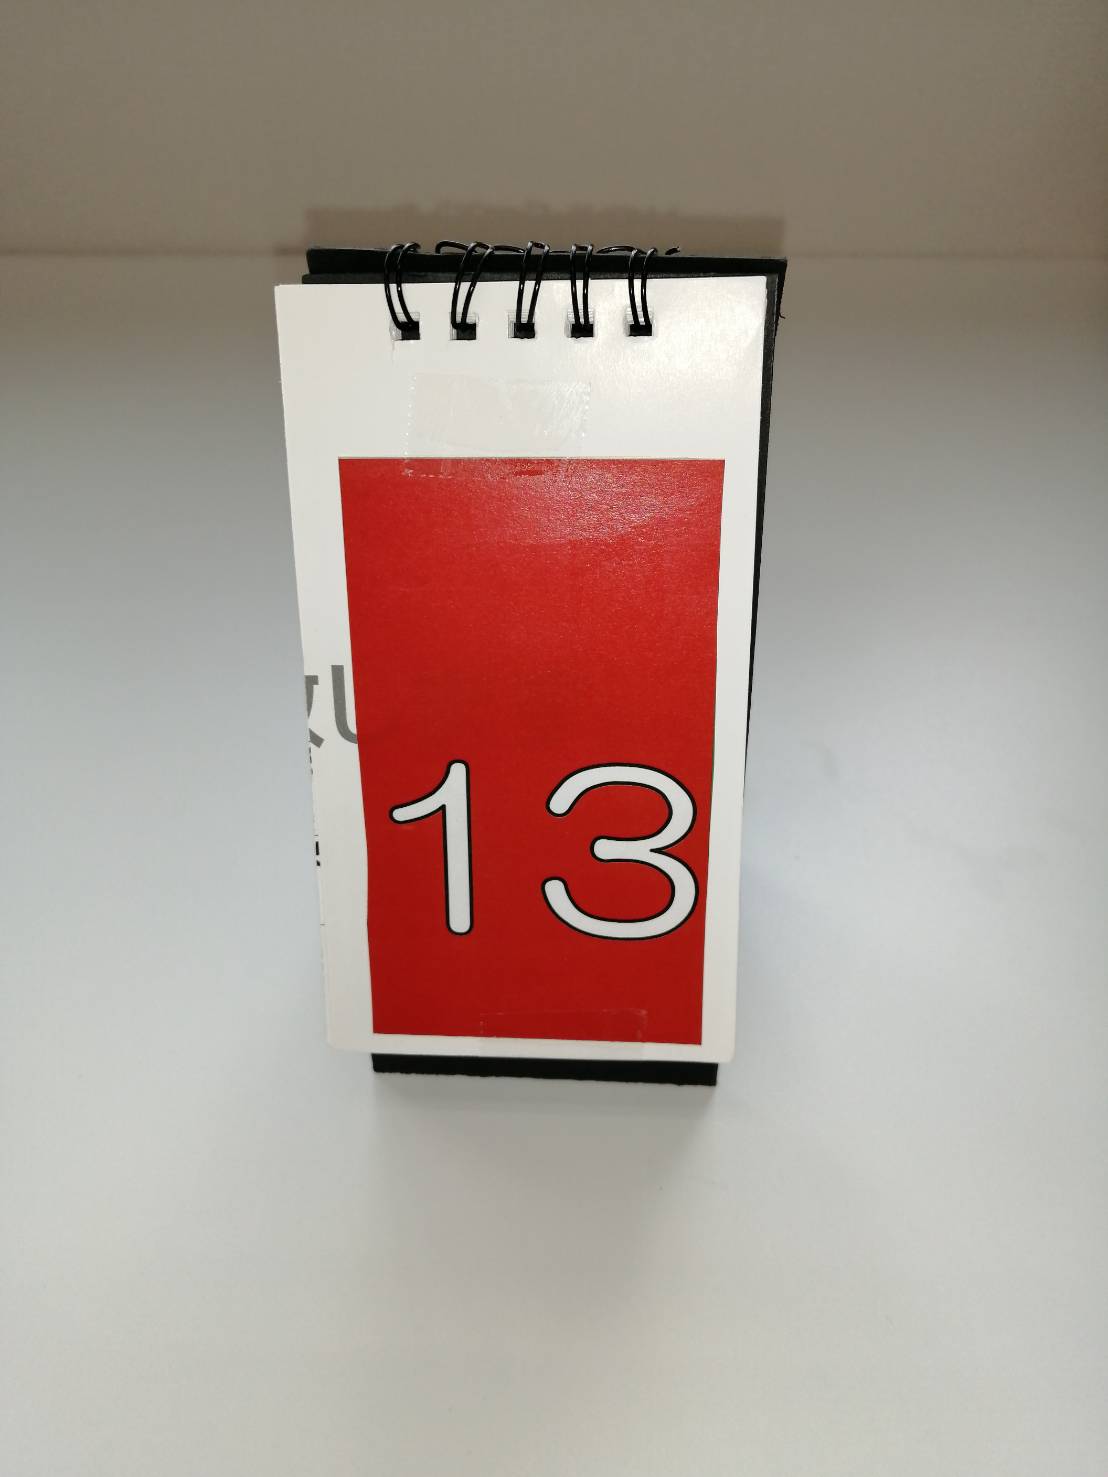 卓上カレンダーを使ったアドベントカレンダーの作り方 株式会社中島工務店 堺市